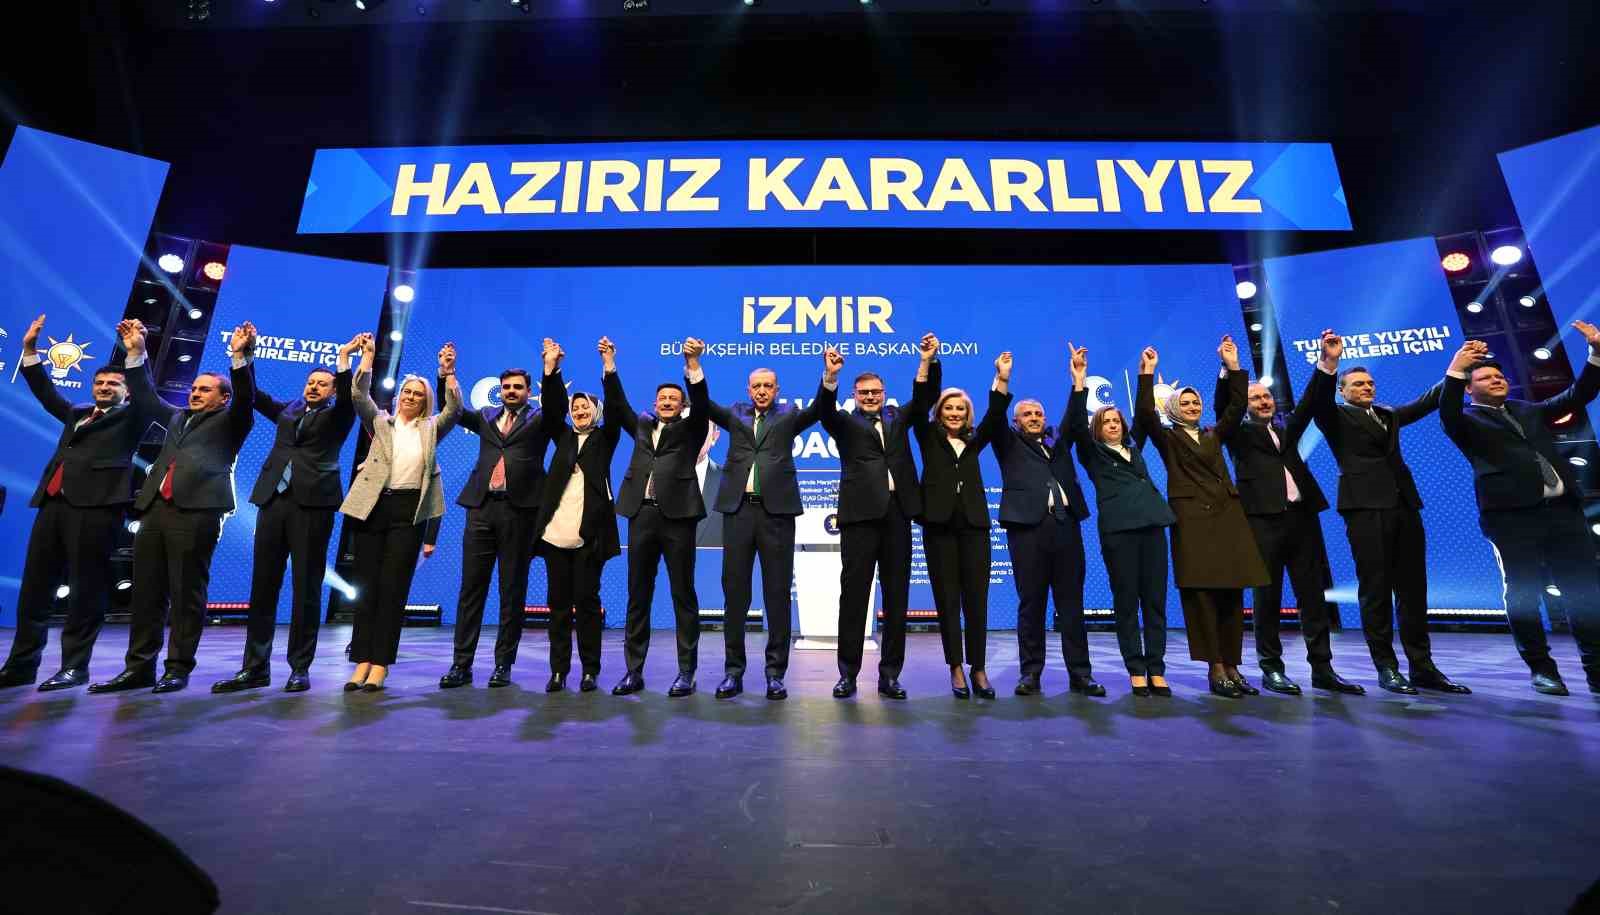 Hamza Dağ, AK Parti’nin İzmir Büyükşehir Belediye Başkan Adayı olarak belirlendi.